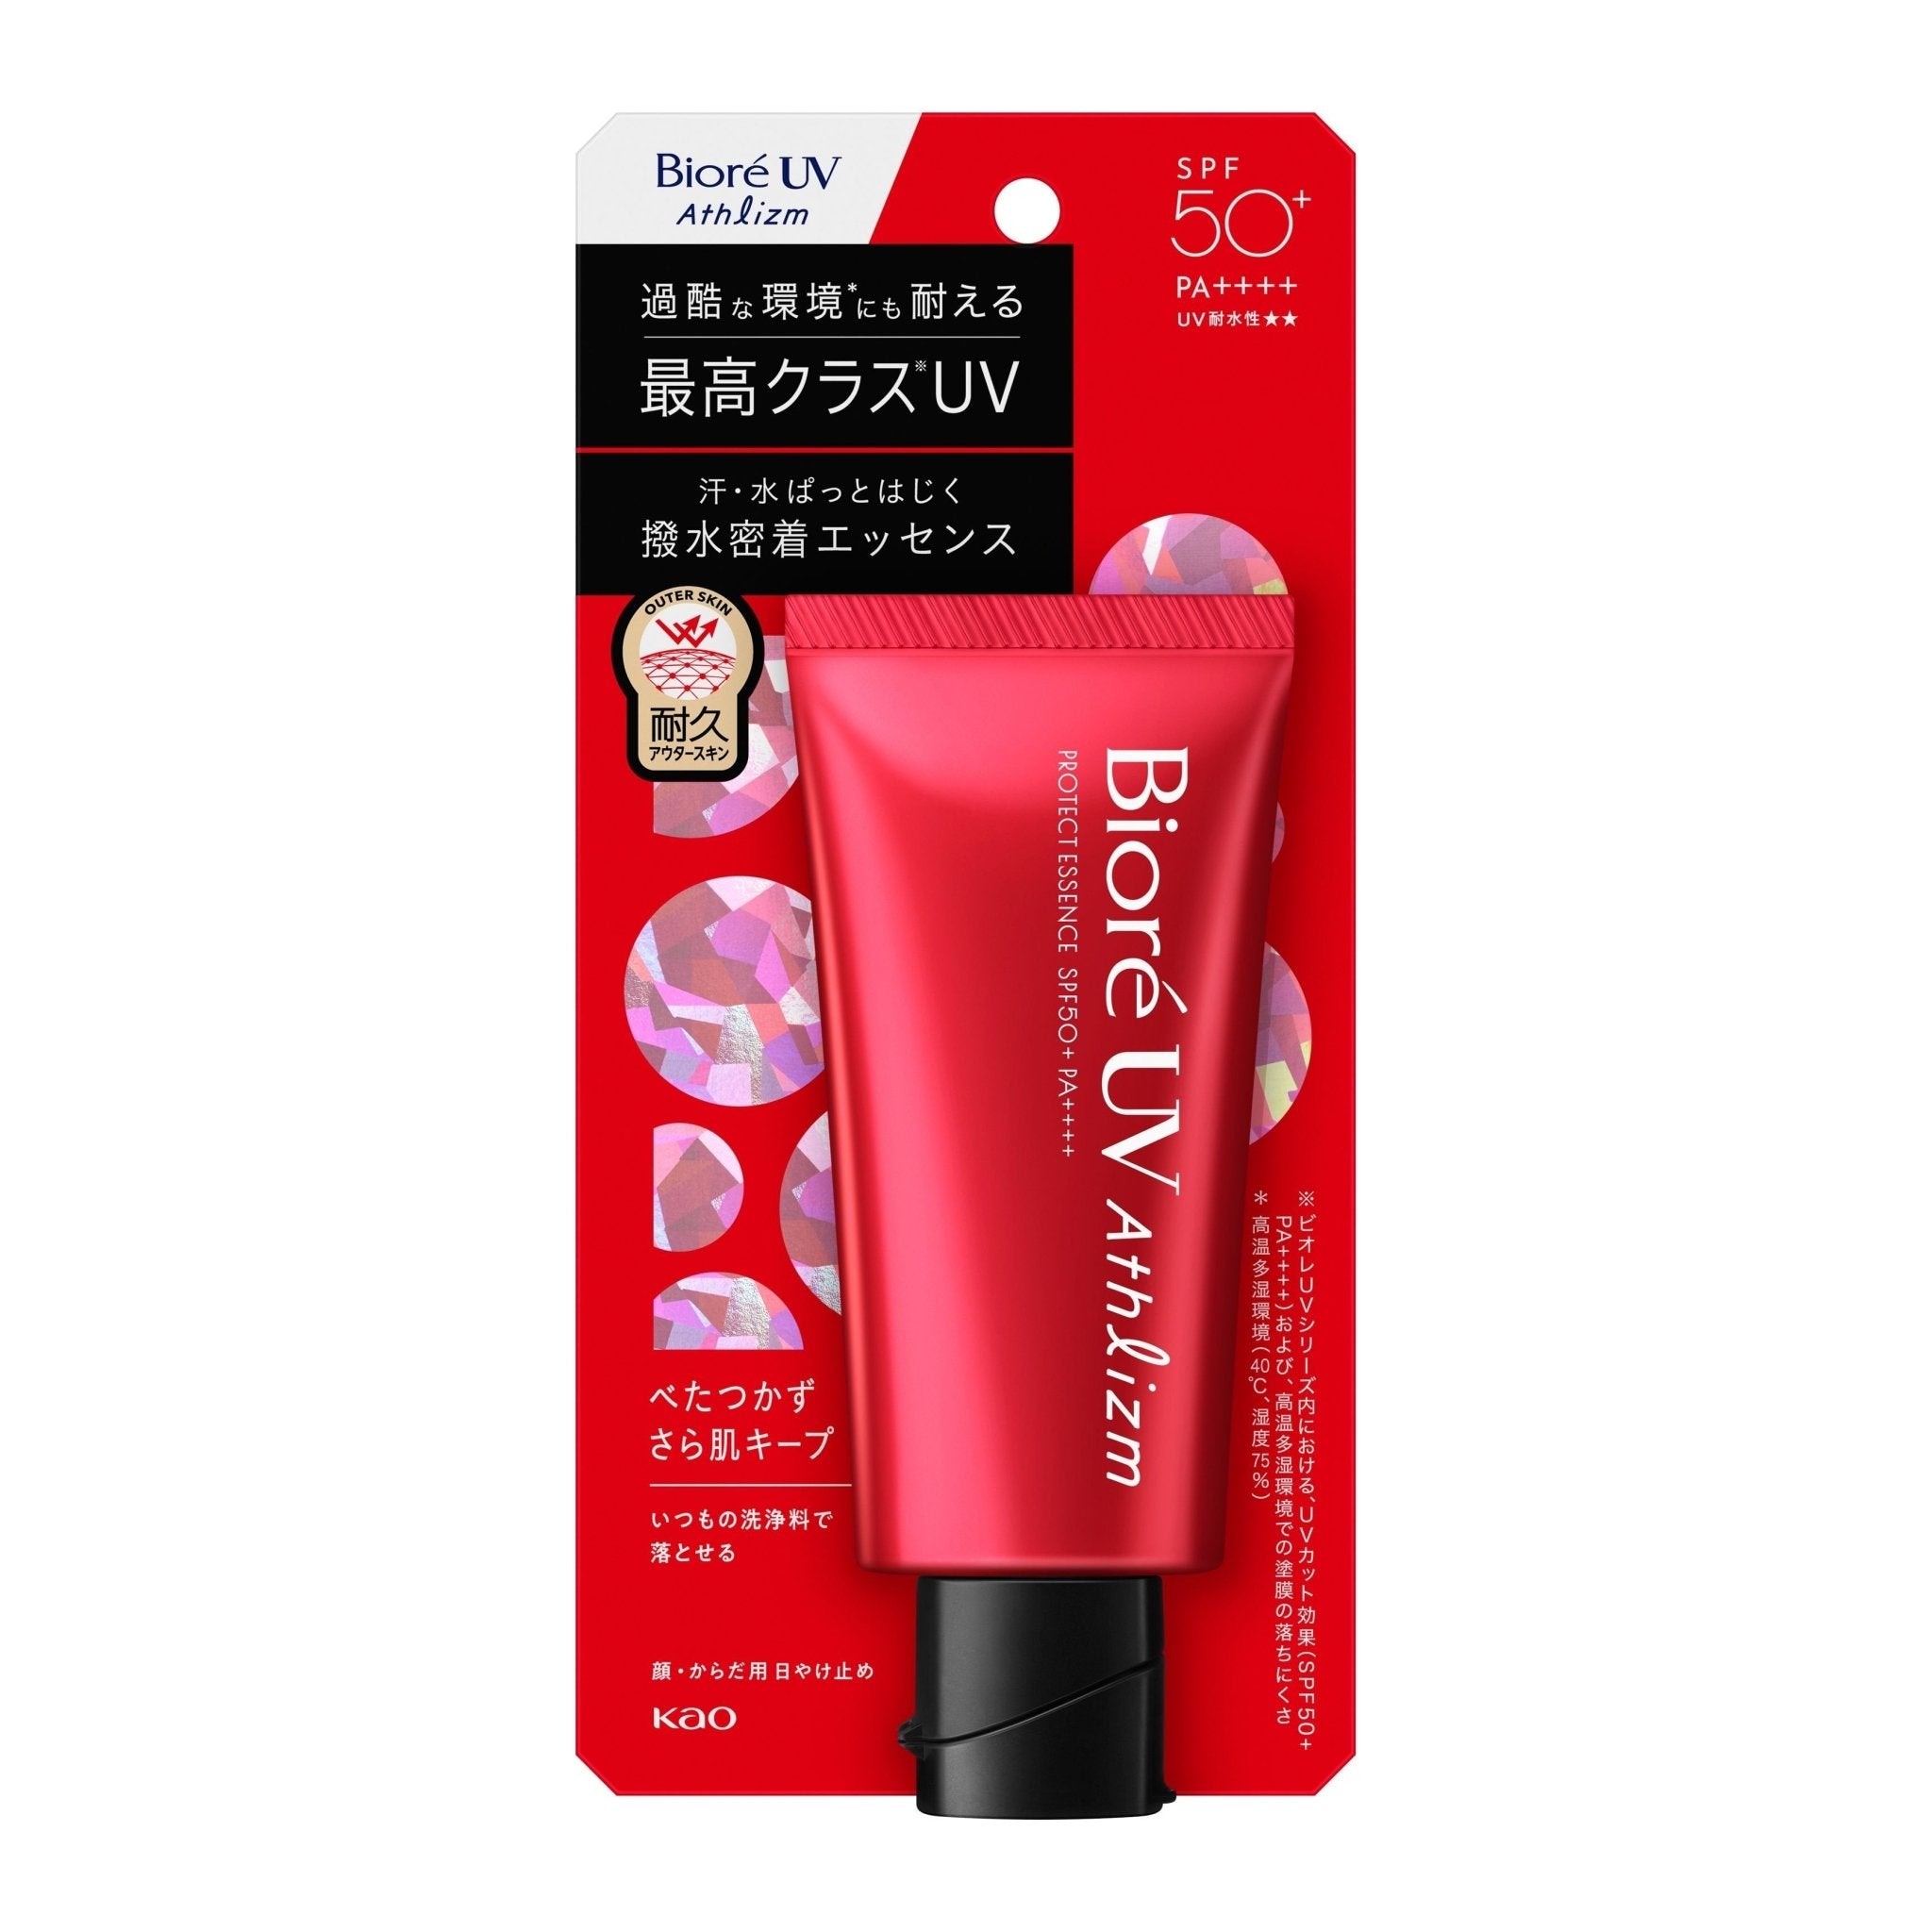 Kao Bioré UV Athlizm Skin Protect Essence Sunscreen SPF50+ PA++++ 70g